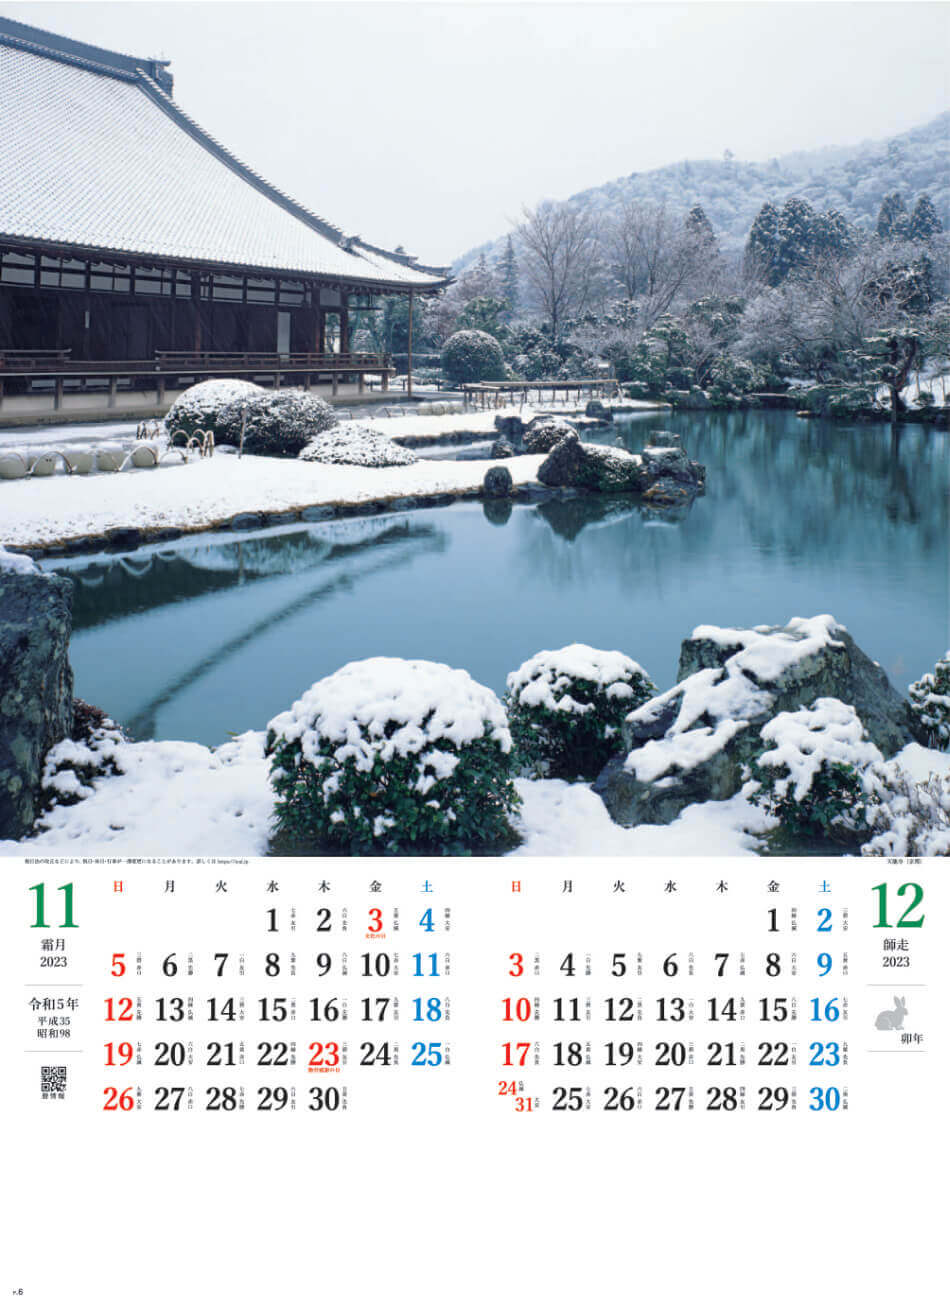 11/12月 天龍寺(京都) 庭の心 2023年カレンダーの画像